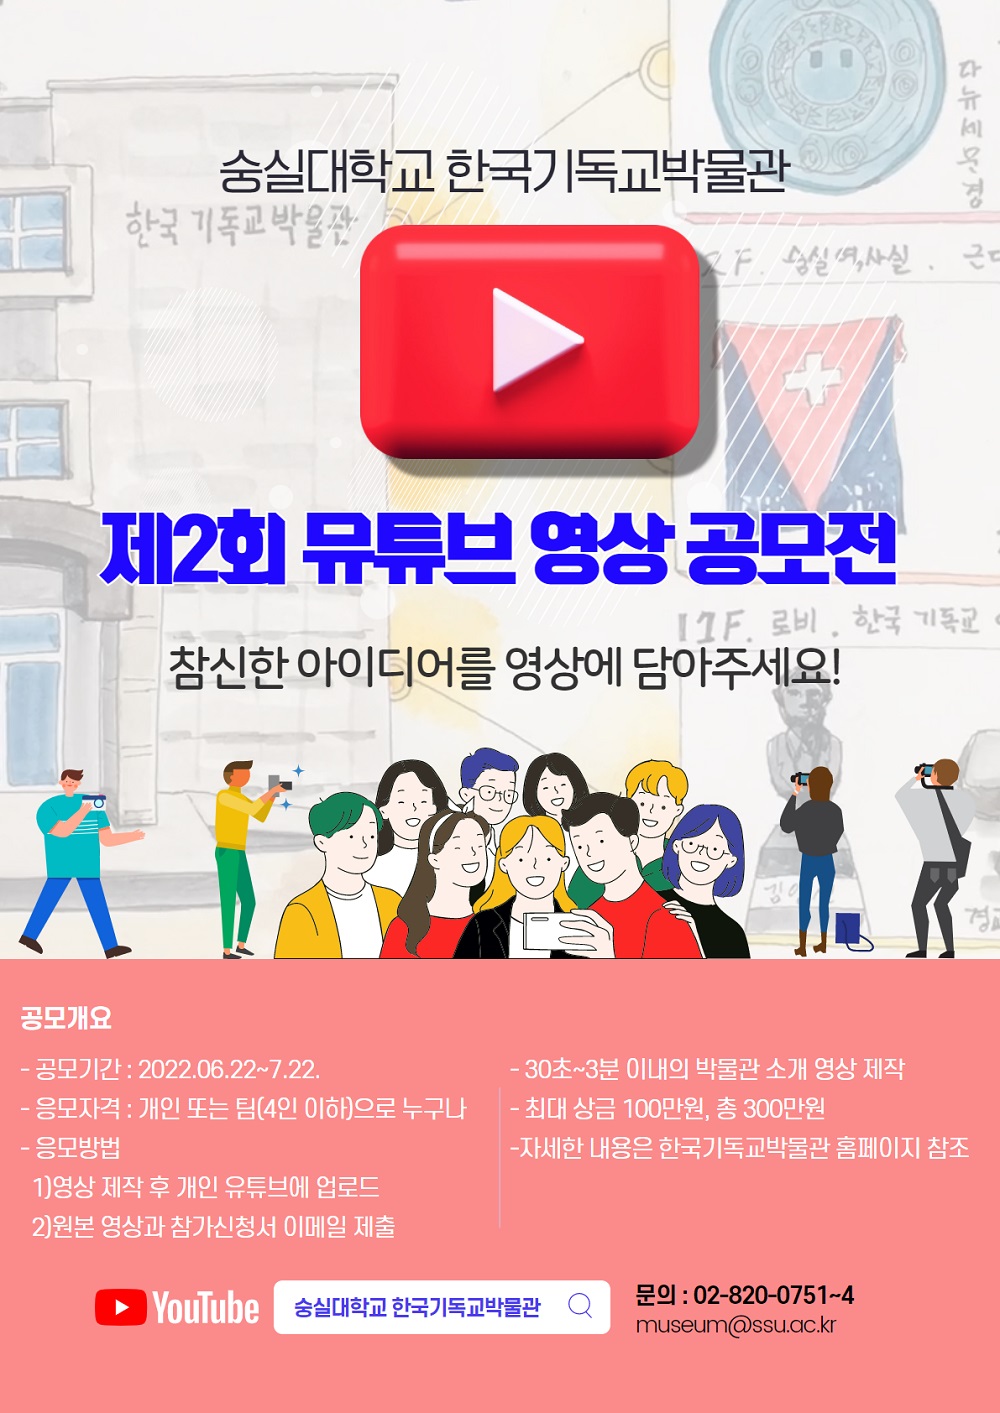 제2회 뮤튜브 영상 공모전